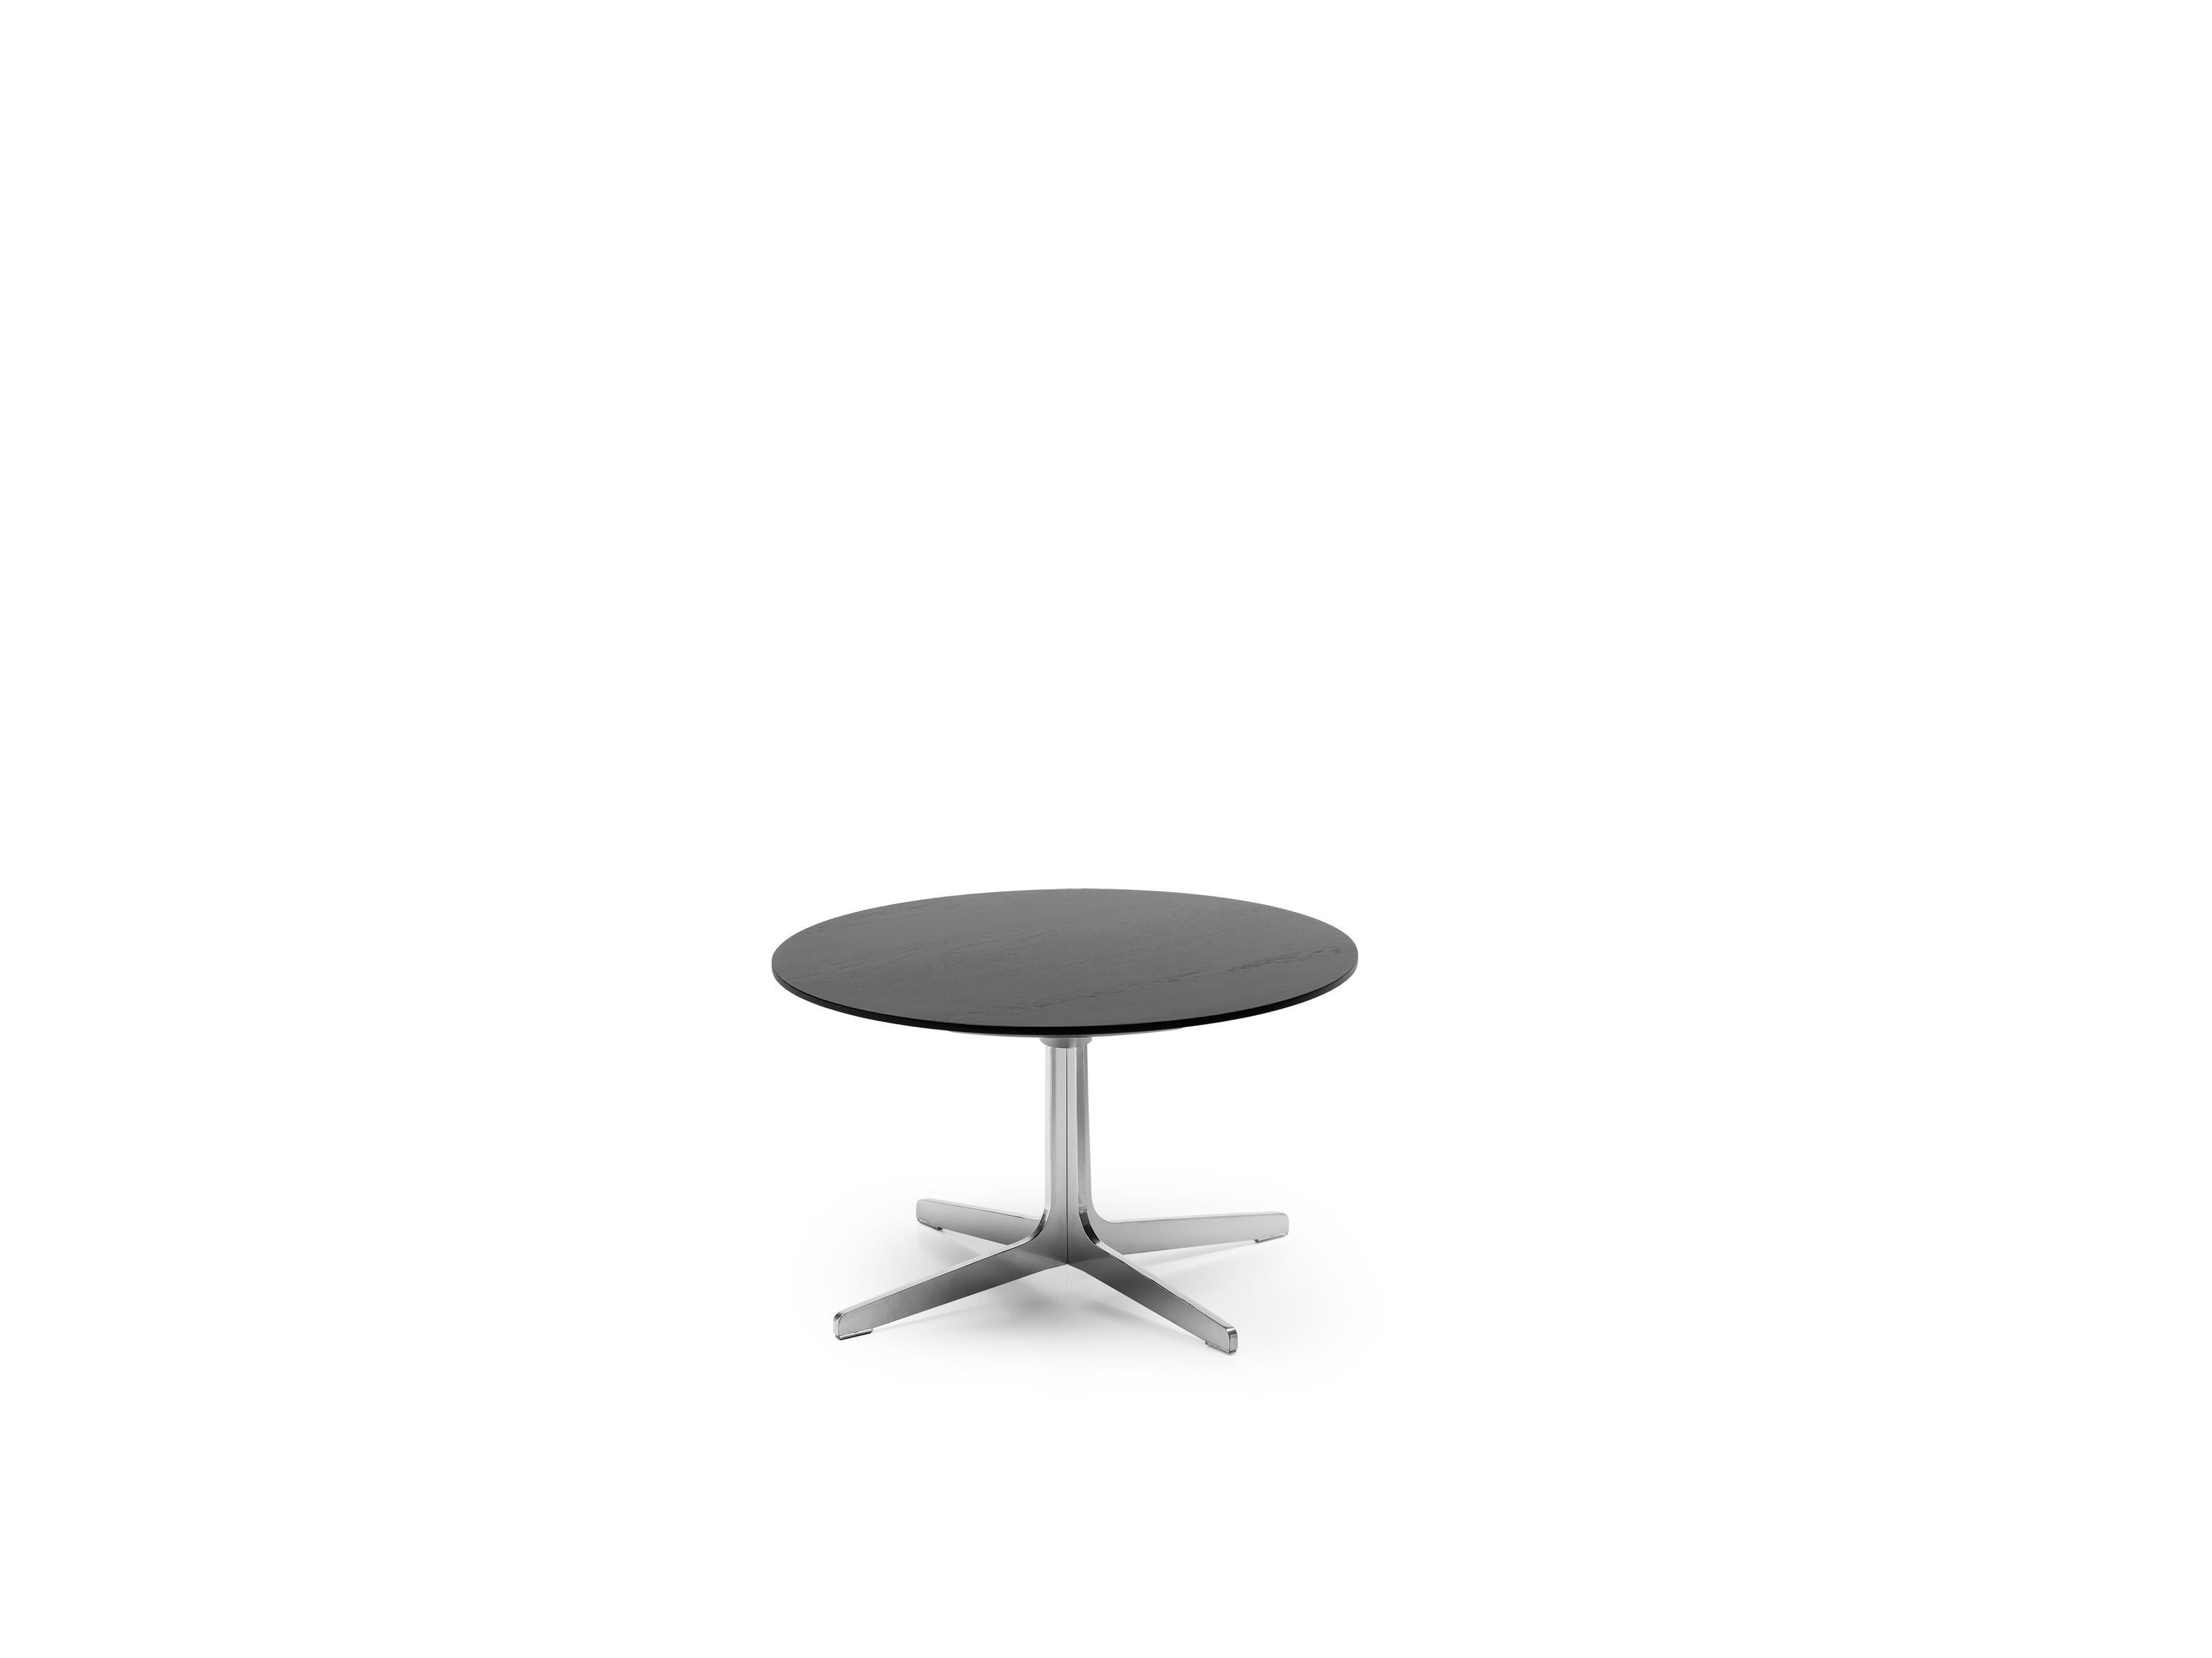 Table de salon DS-144 de De Sede
Design/One : Werner Aisslinger
Dimensions : D 50 x L 61 x H 37 cm
Matériaux : acier chromé brillant, chêne Nero

Les prix peuvent varier en fonction des matériaux choisis et de la taille. 

S'asseoir comme dans une